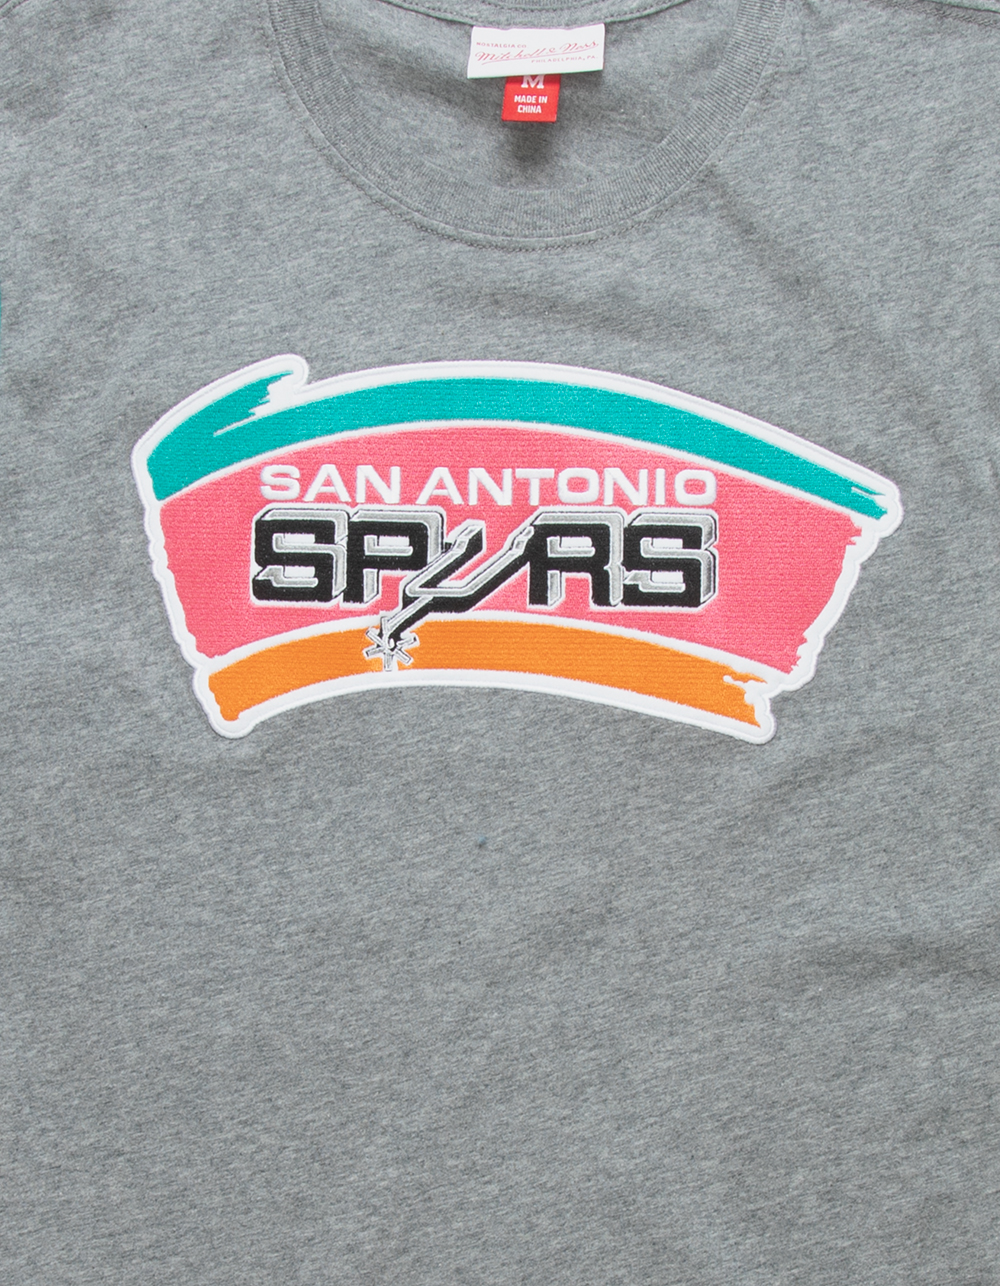 Bone Spurs T-Shirt - Mens & Womens - 5 Colors